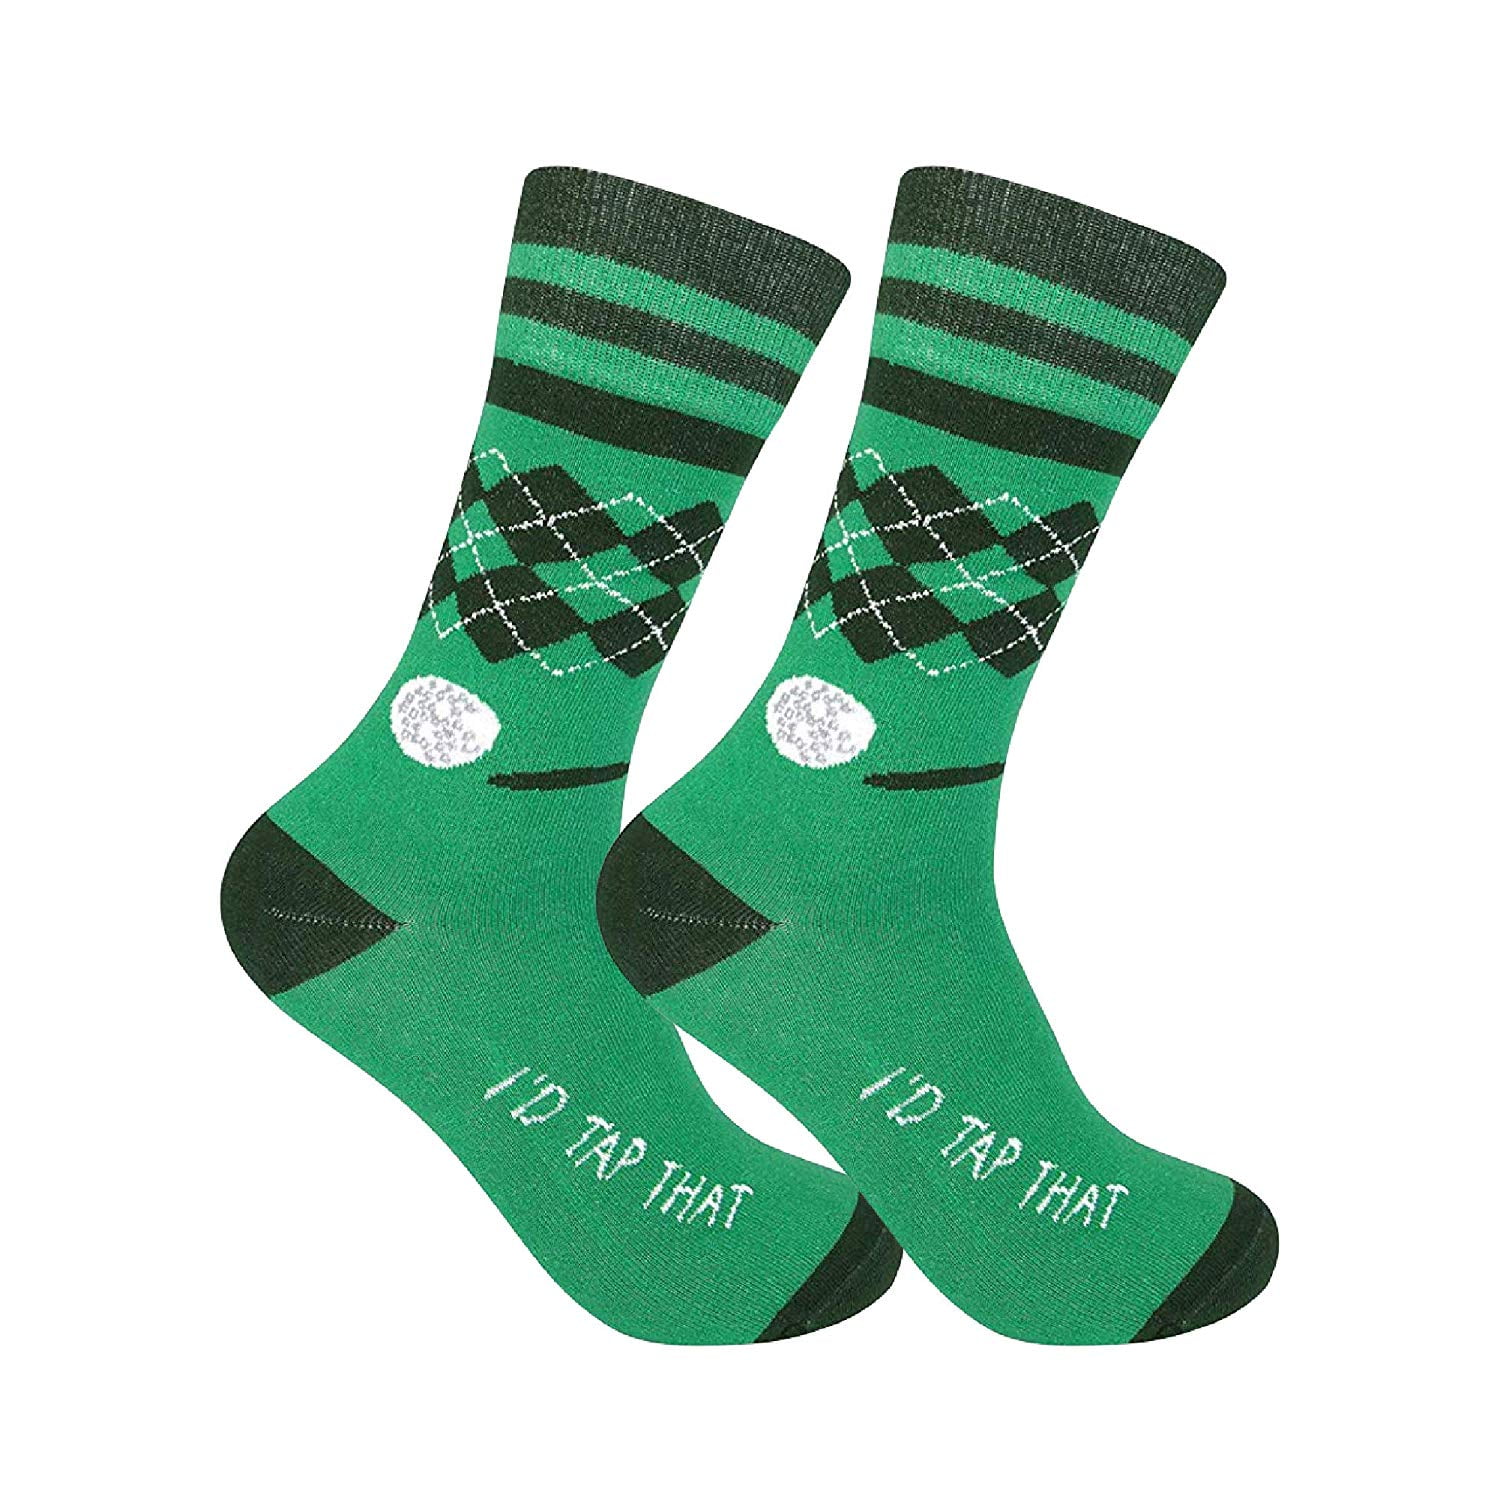 Funatic Golf Socks   I'd Tap That   Funny Mens Socks   Novelty Socks    Golf Dress Socks   Funky Mens Socks   Golf Socks Men   Funny Golf   Mens  Golf ...